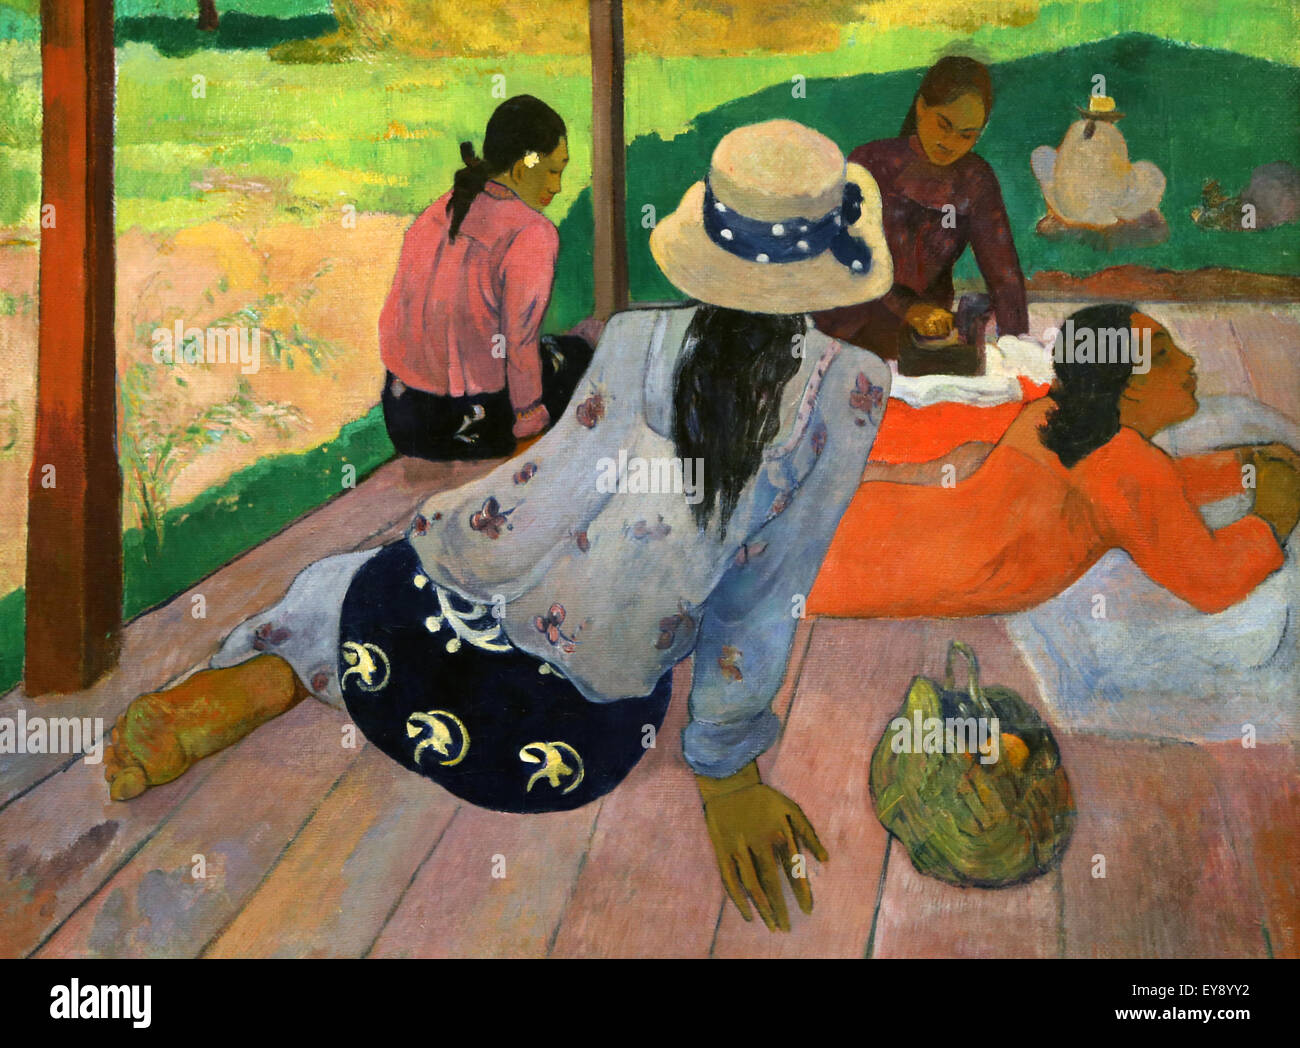 Paul Gauguin (1848-1903). El pintor francés. La Siesta. 1892-94. Óleo sobre lienzo. Museo Metropolitano de Arte de Nueva York, EE.UU. Foto de stock